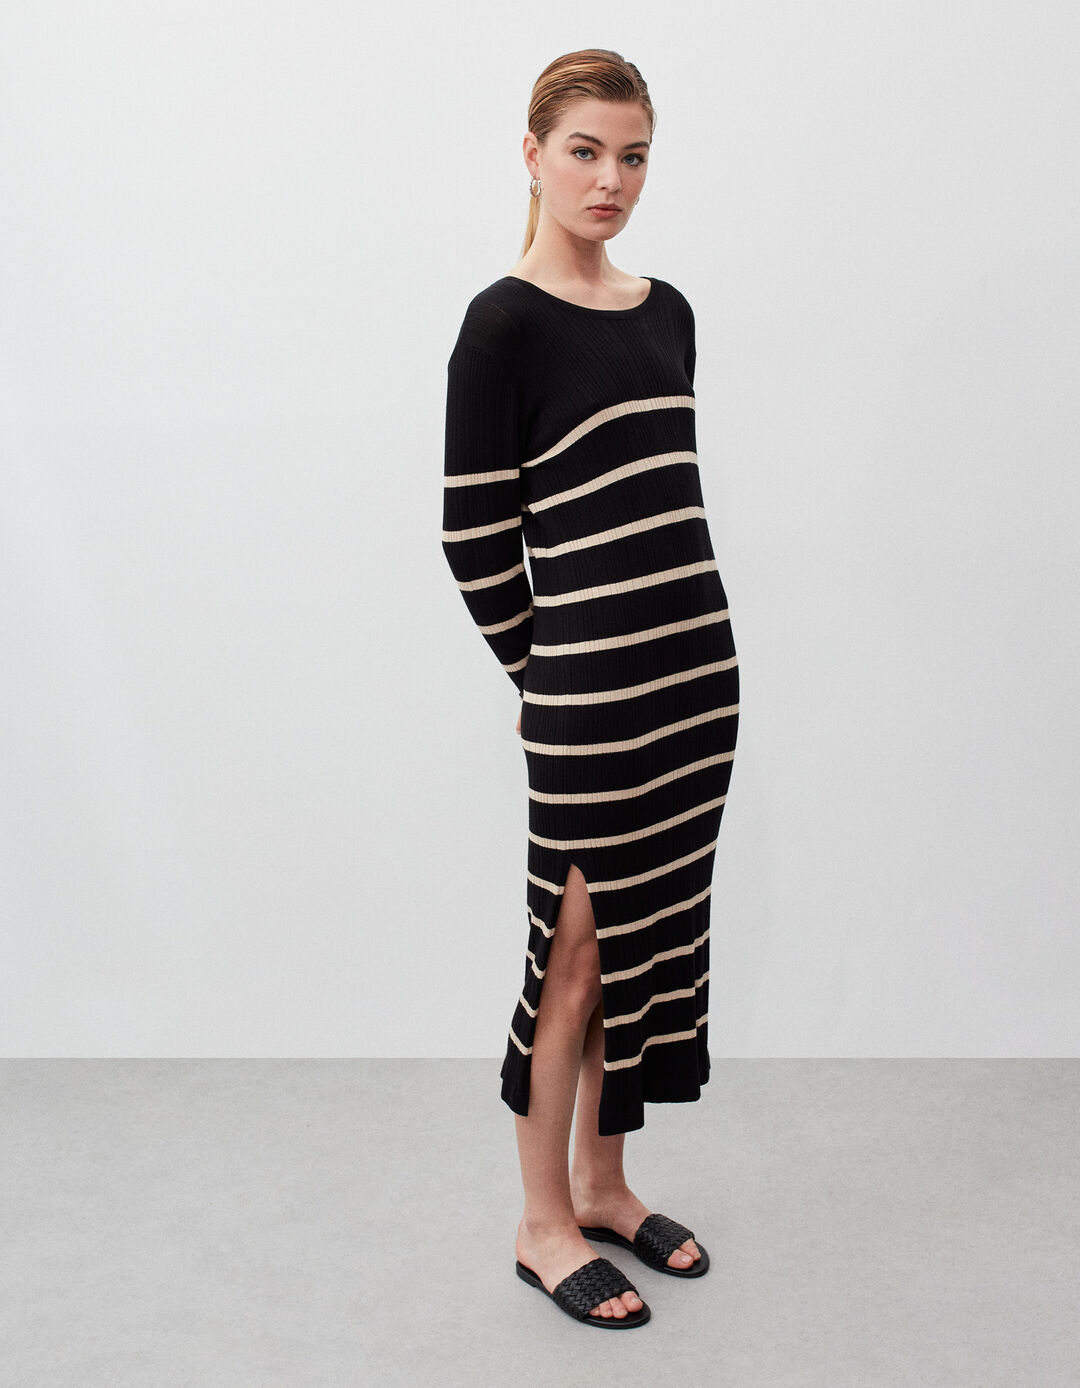 Striped Knit Dress, Woman, Black